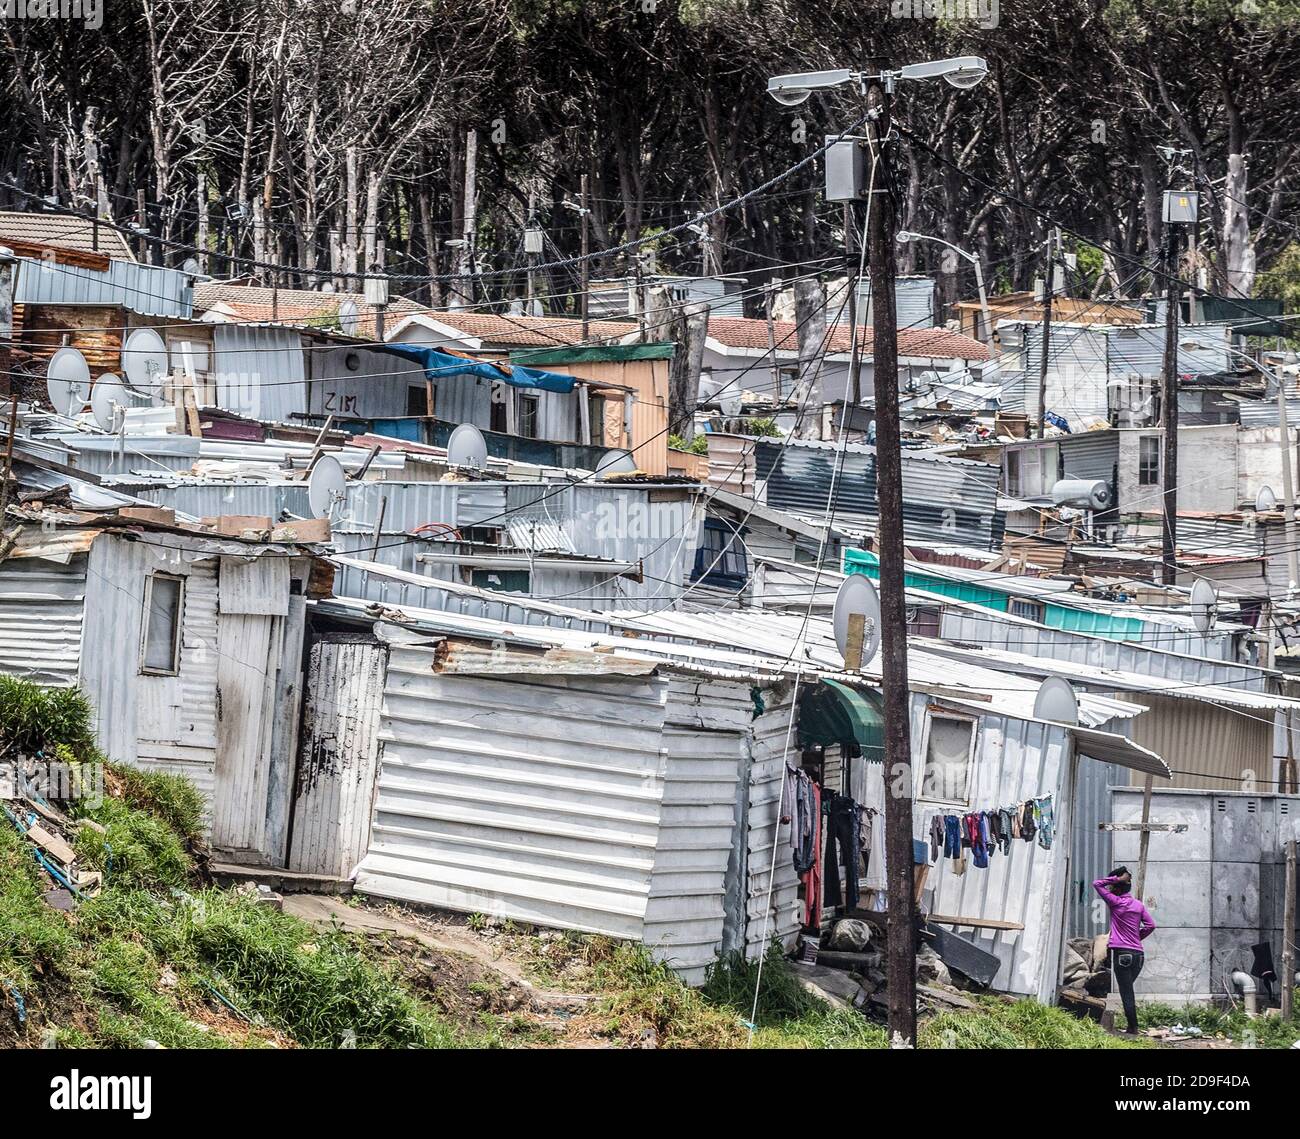 Una città shanty vicino a Città del Capo, Sud Africa. Mentre la segregazione razziale o l'apartheid, è finita, i neri del paese non vivono così come i bianchi. Foto Stock